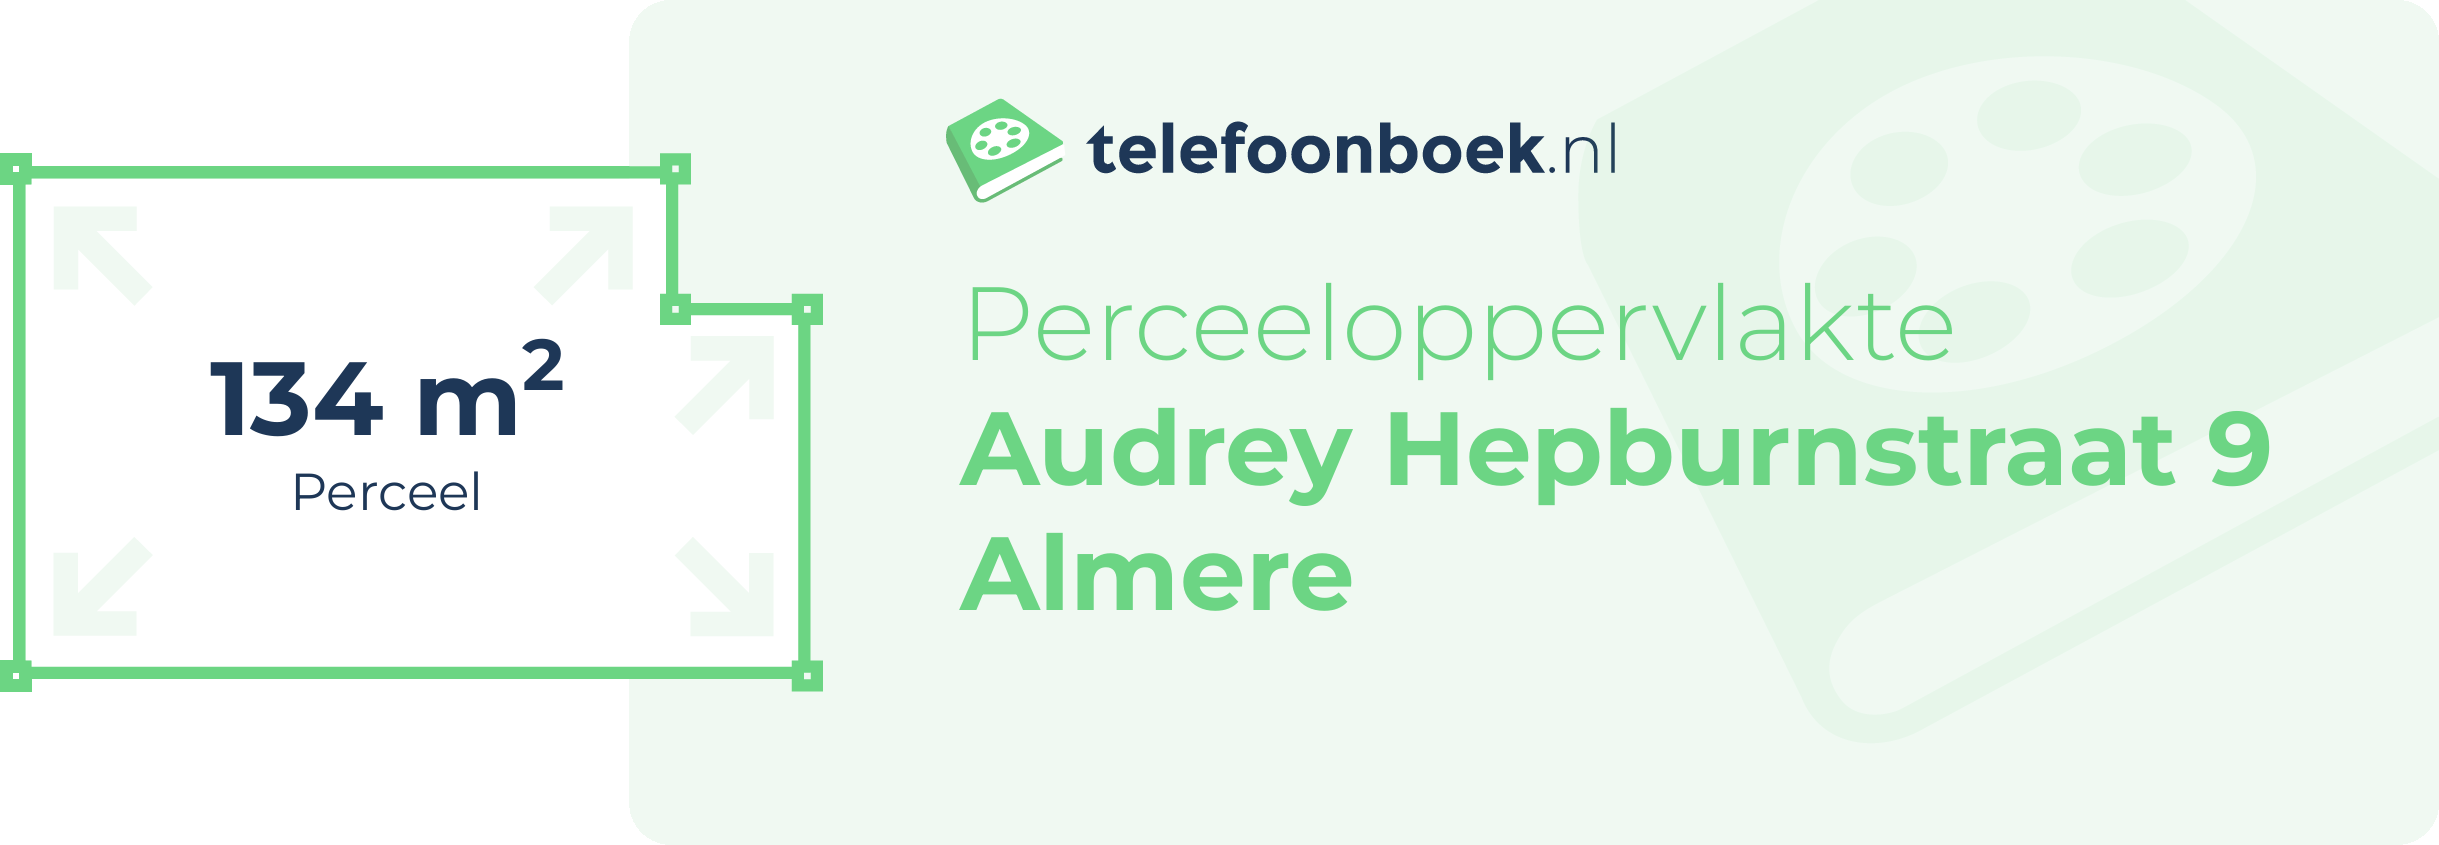 Perceeloppervlakte Audrey Hepburnstraat 9 Almere